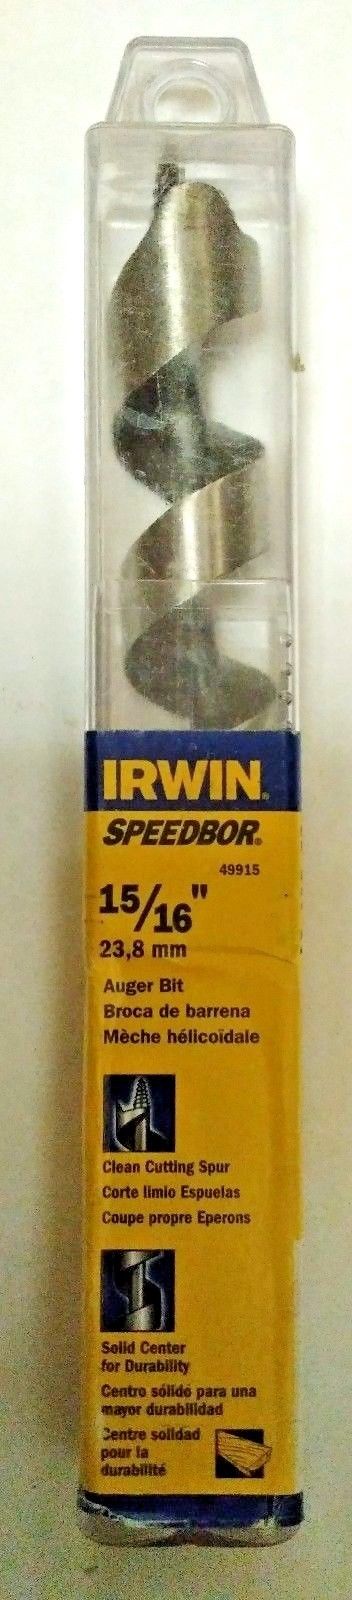 Irwin Speedbor 49915 15/16" x 8" Auger Bit